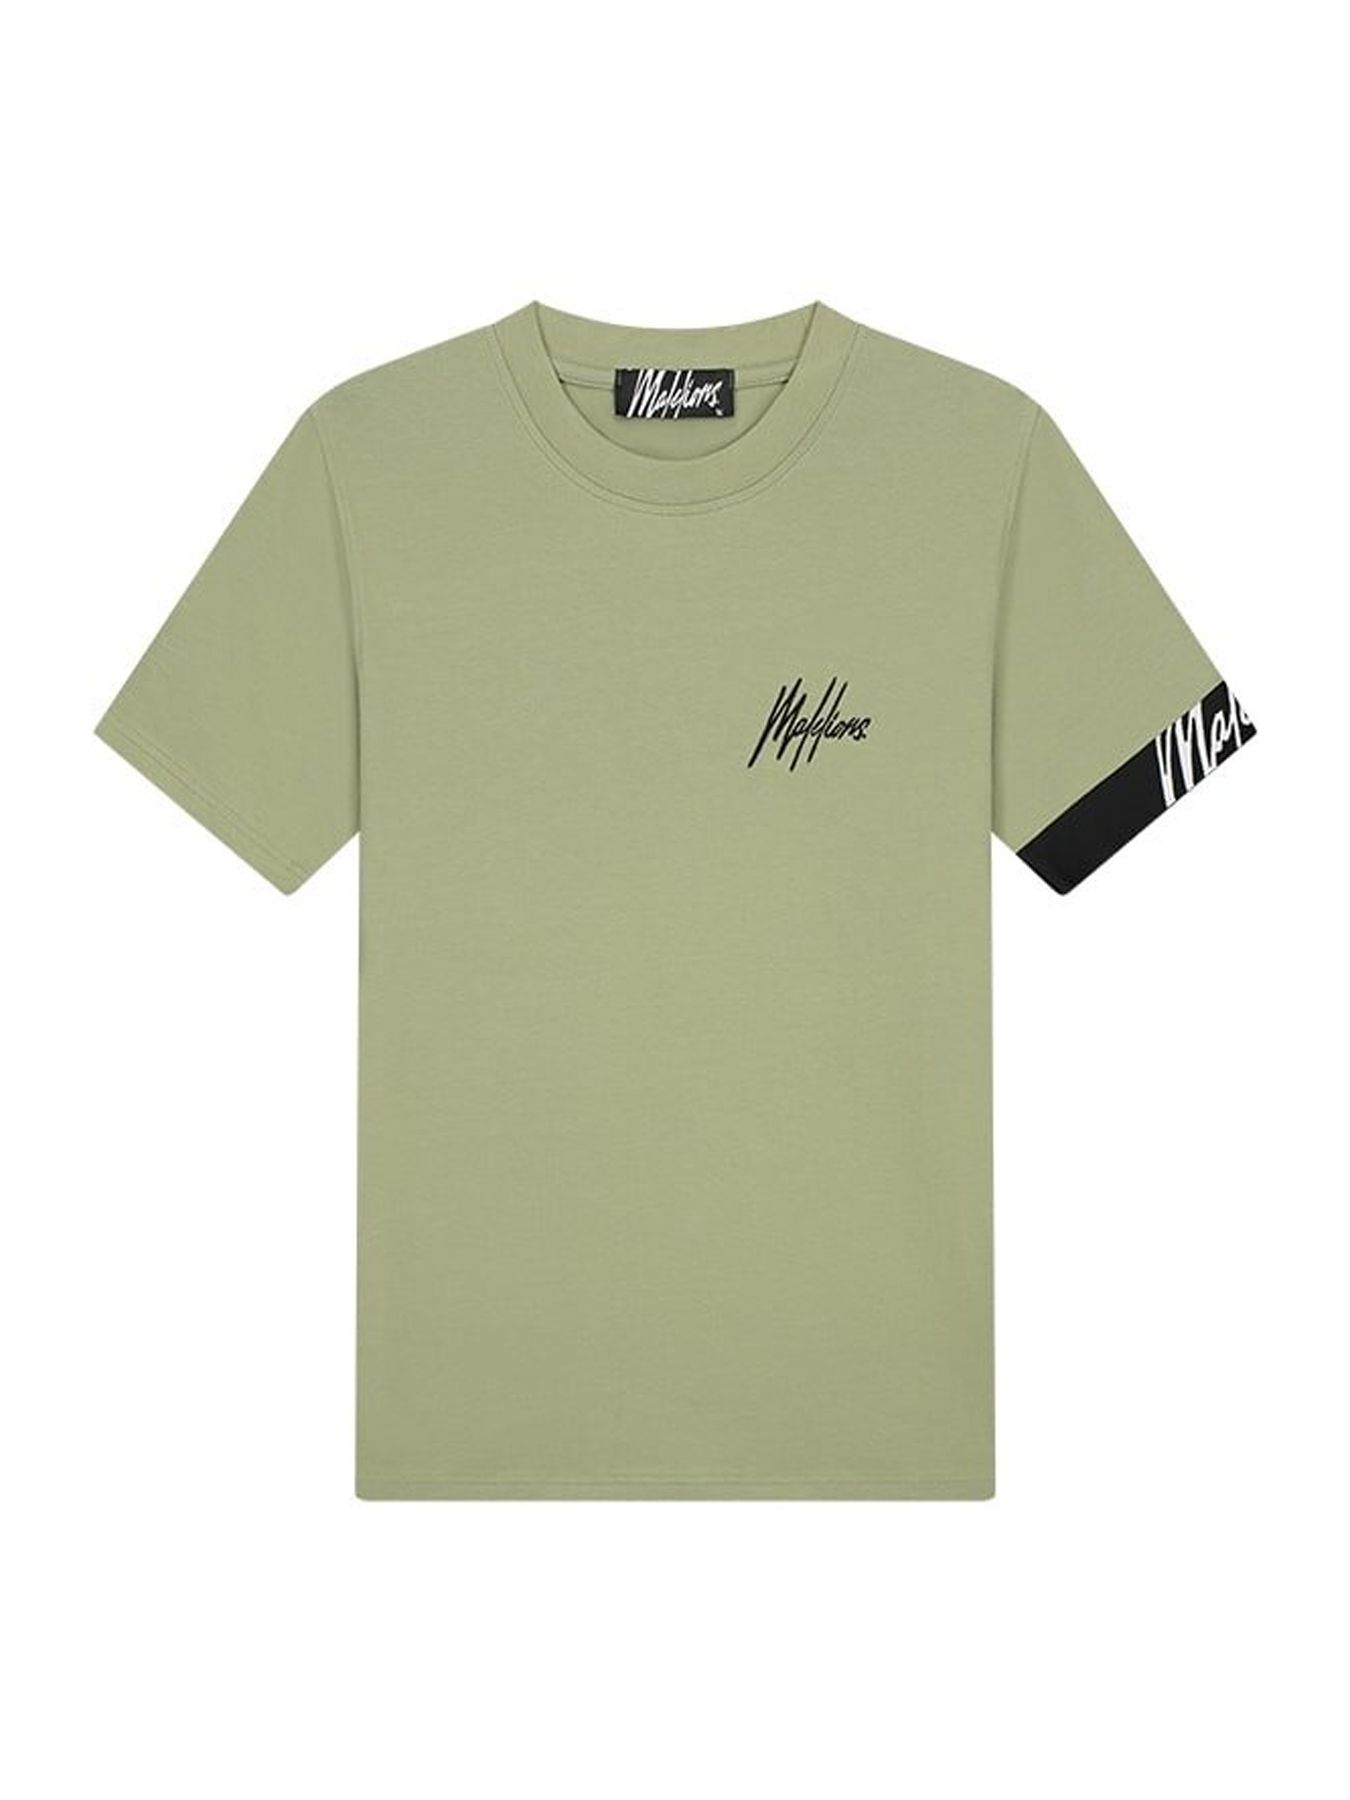 Malelions Men Captain t-shirt 2.0 light sage/Black 00108667-425